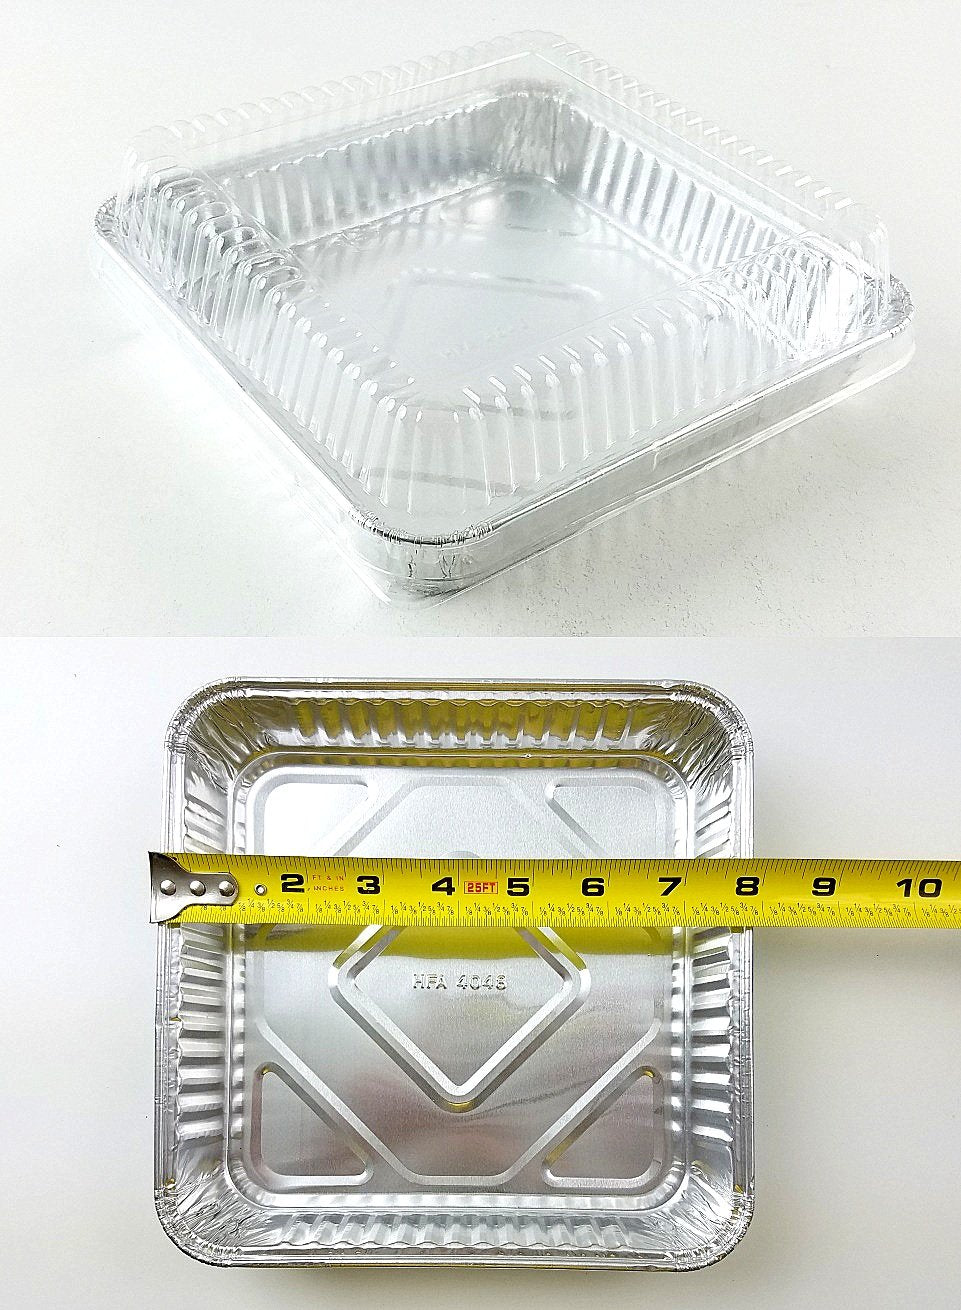 8x8 Aluminum Pans 30 Pack Disposable 8 Inch Square Foil Baking Pans Durable  Cake